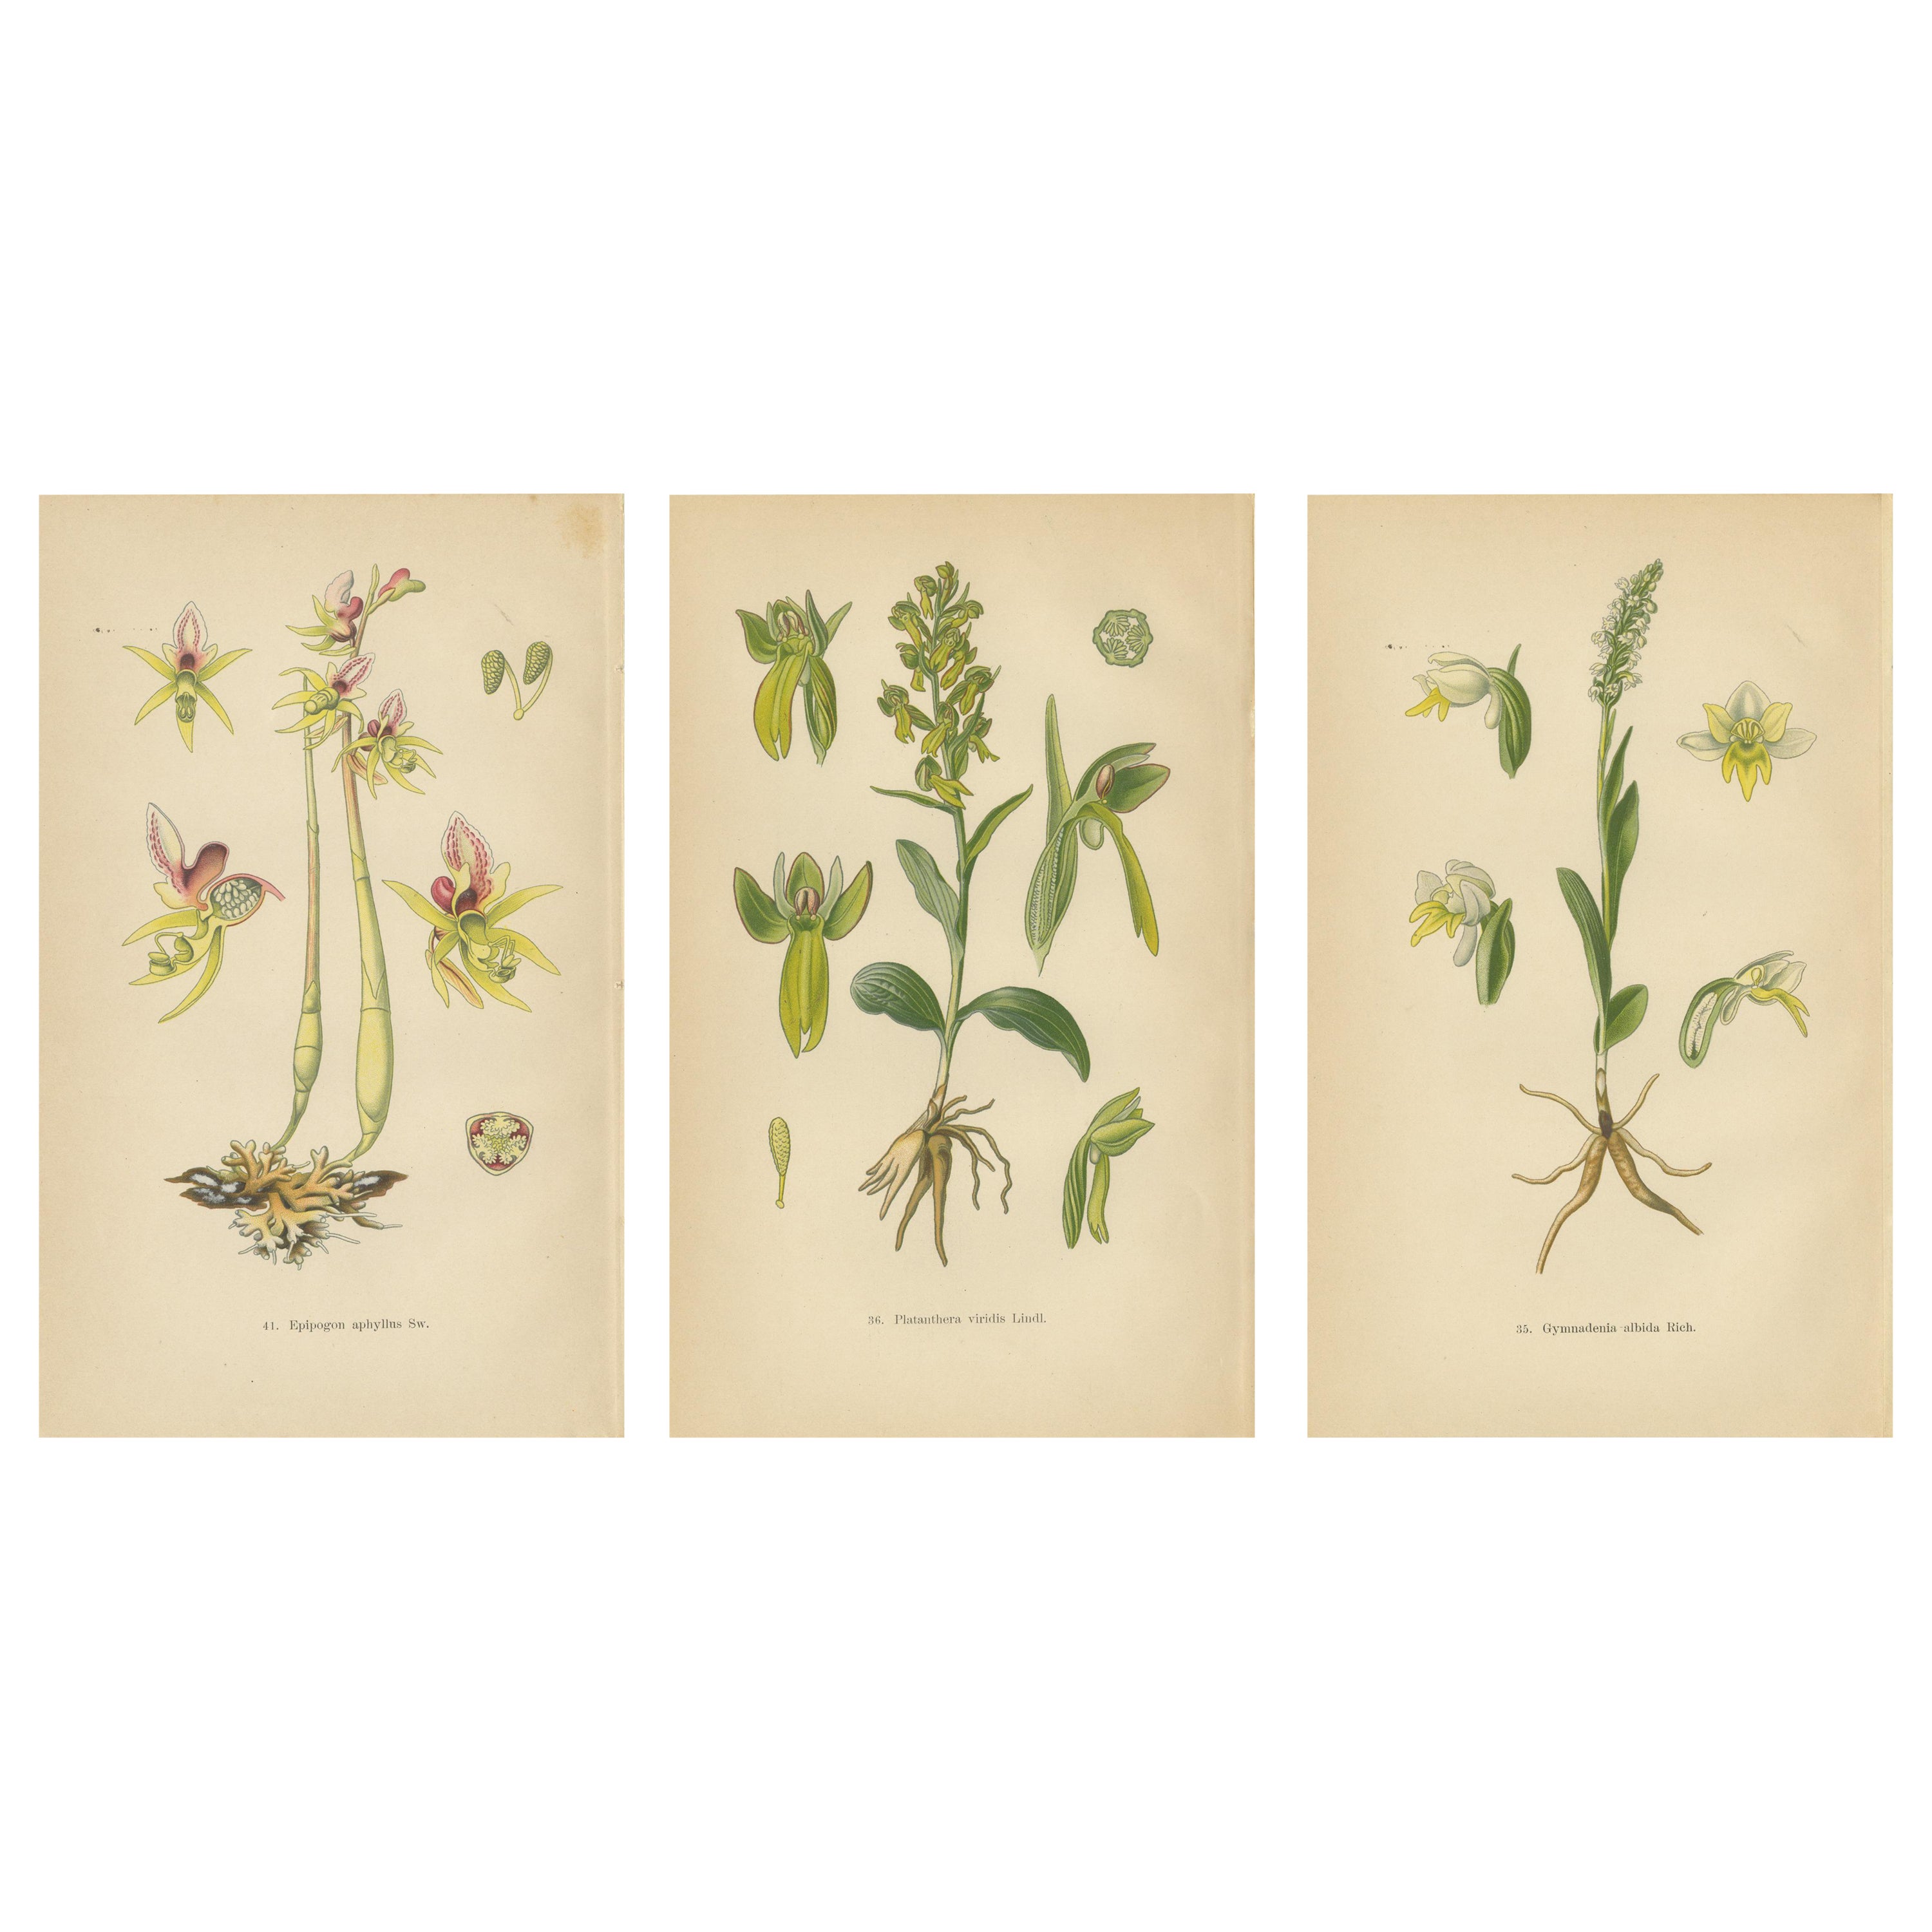 Floral Symphony: Müller's 1904 Botanical Illustrations